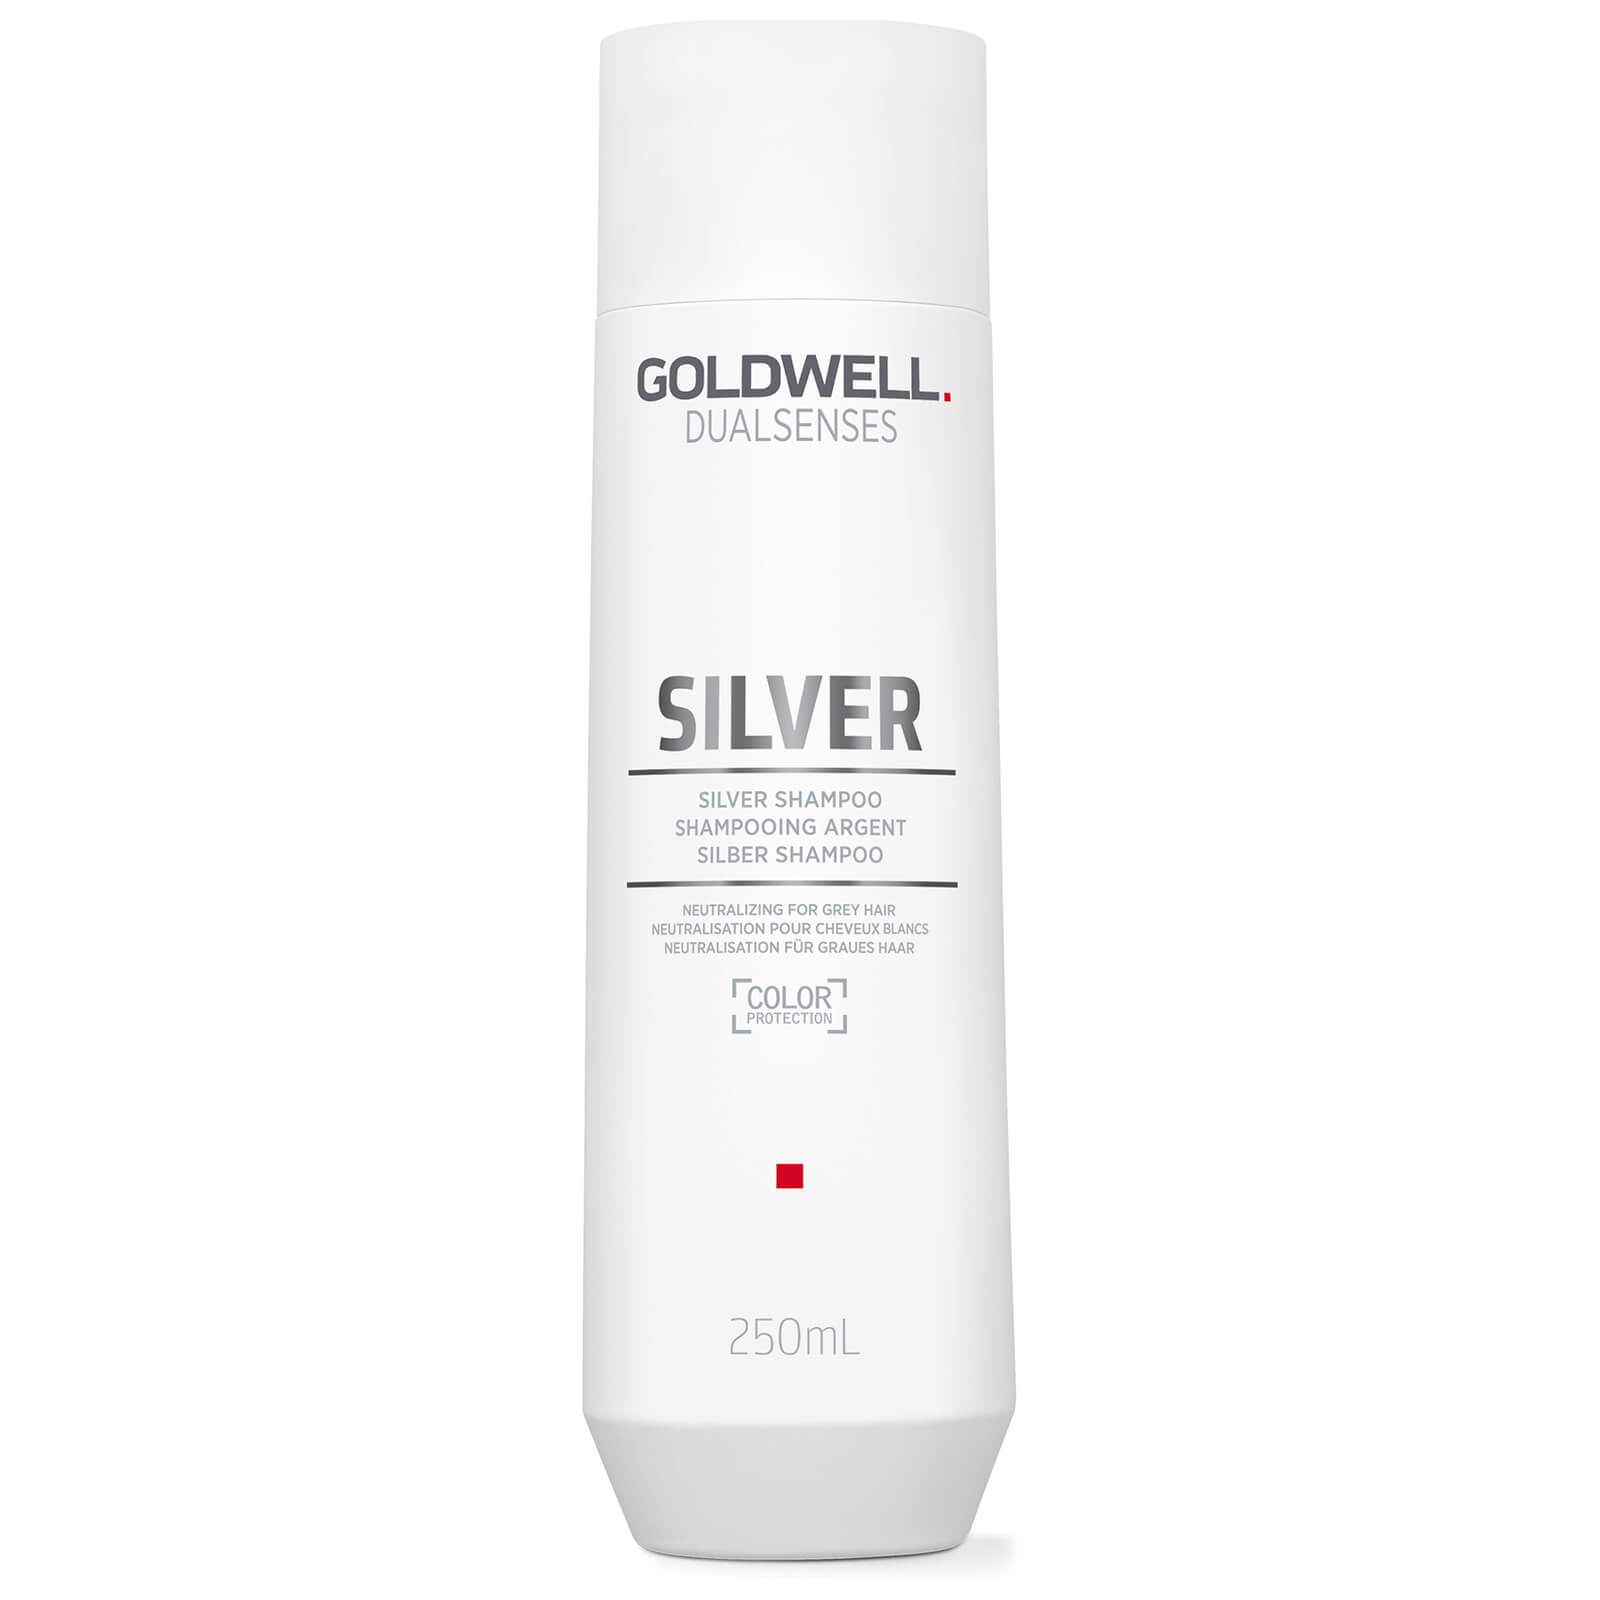 Корректирующий шампунь для седых и светлых волос Goldwell DS SILVER  250 мл шампунь для седых и светлых волос silver blast shampoo пк908 300 мл